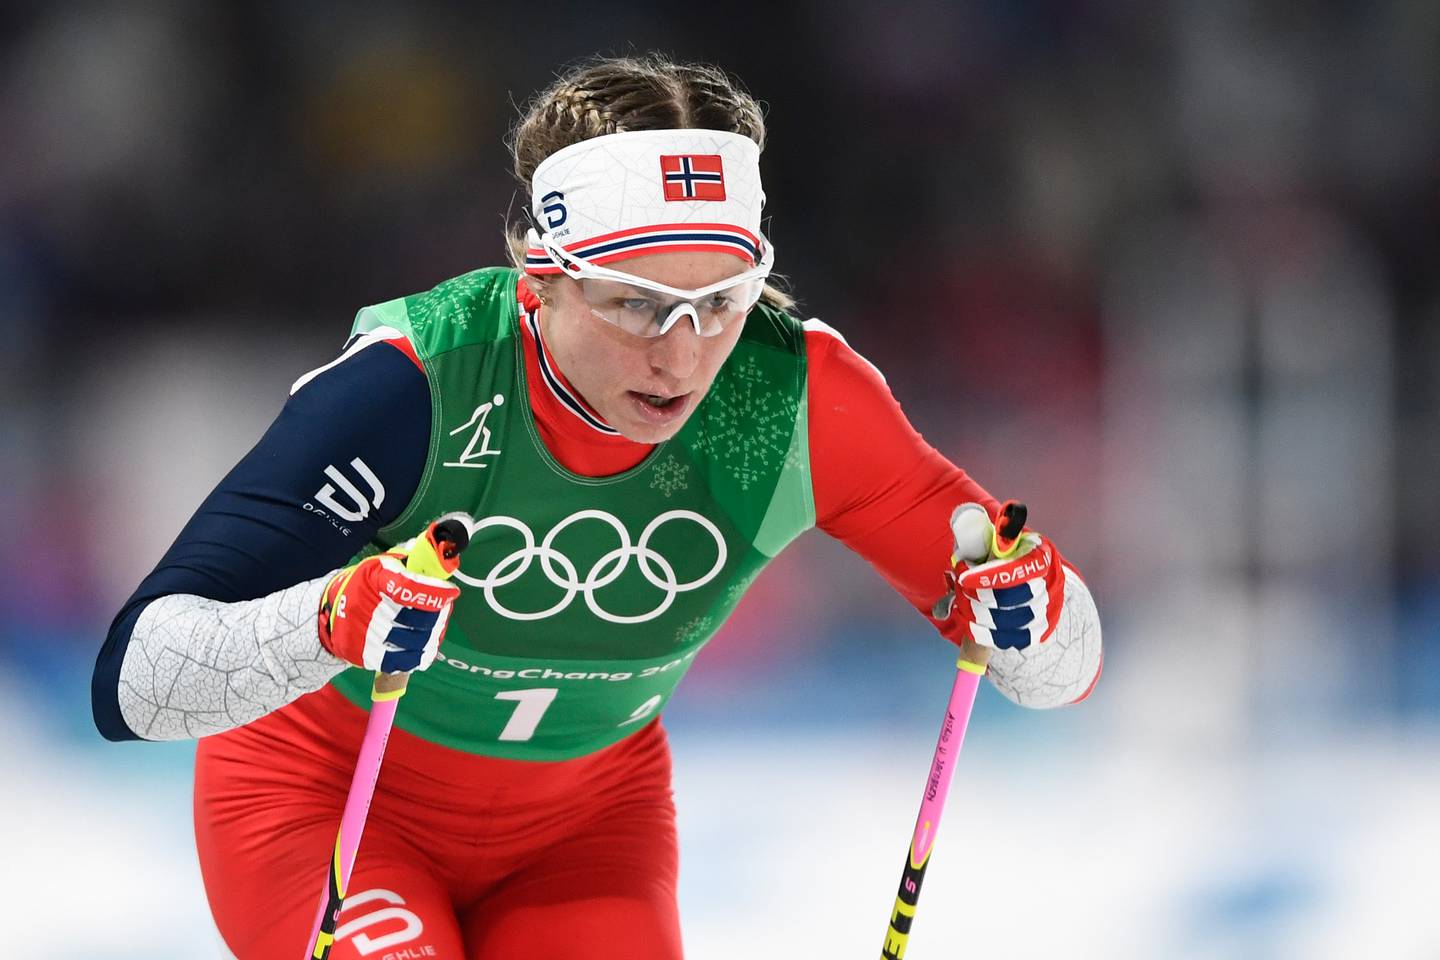 Astrid Uhrenholdt Jacobsen i aksjon i sitt siste OL, i Pyeongchang i 2018, der hun var med på det vinnende stafettlaget.